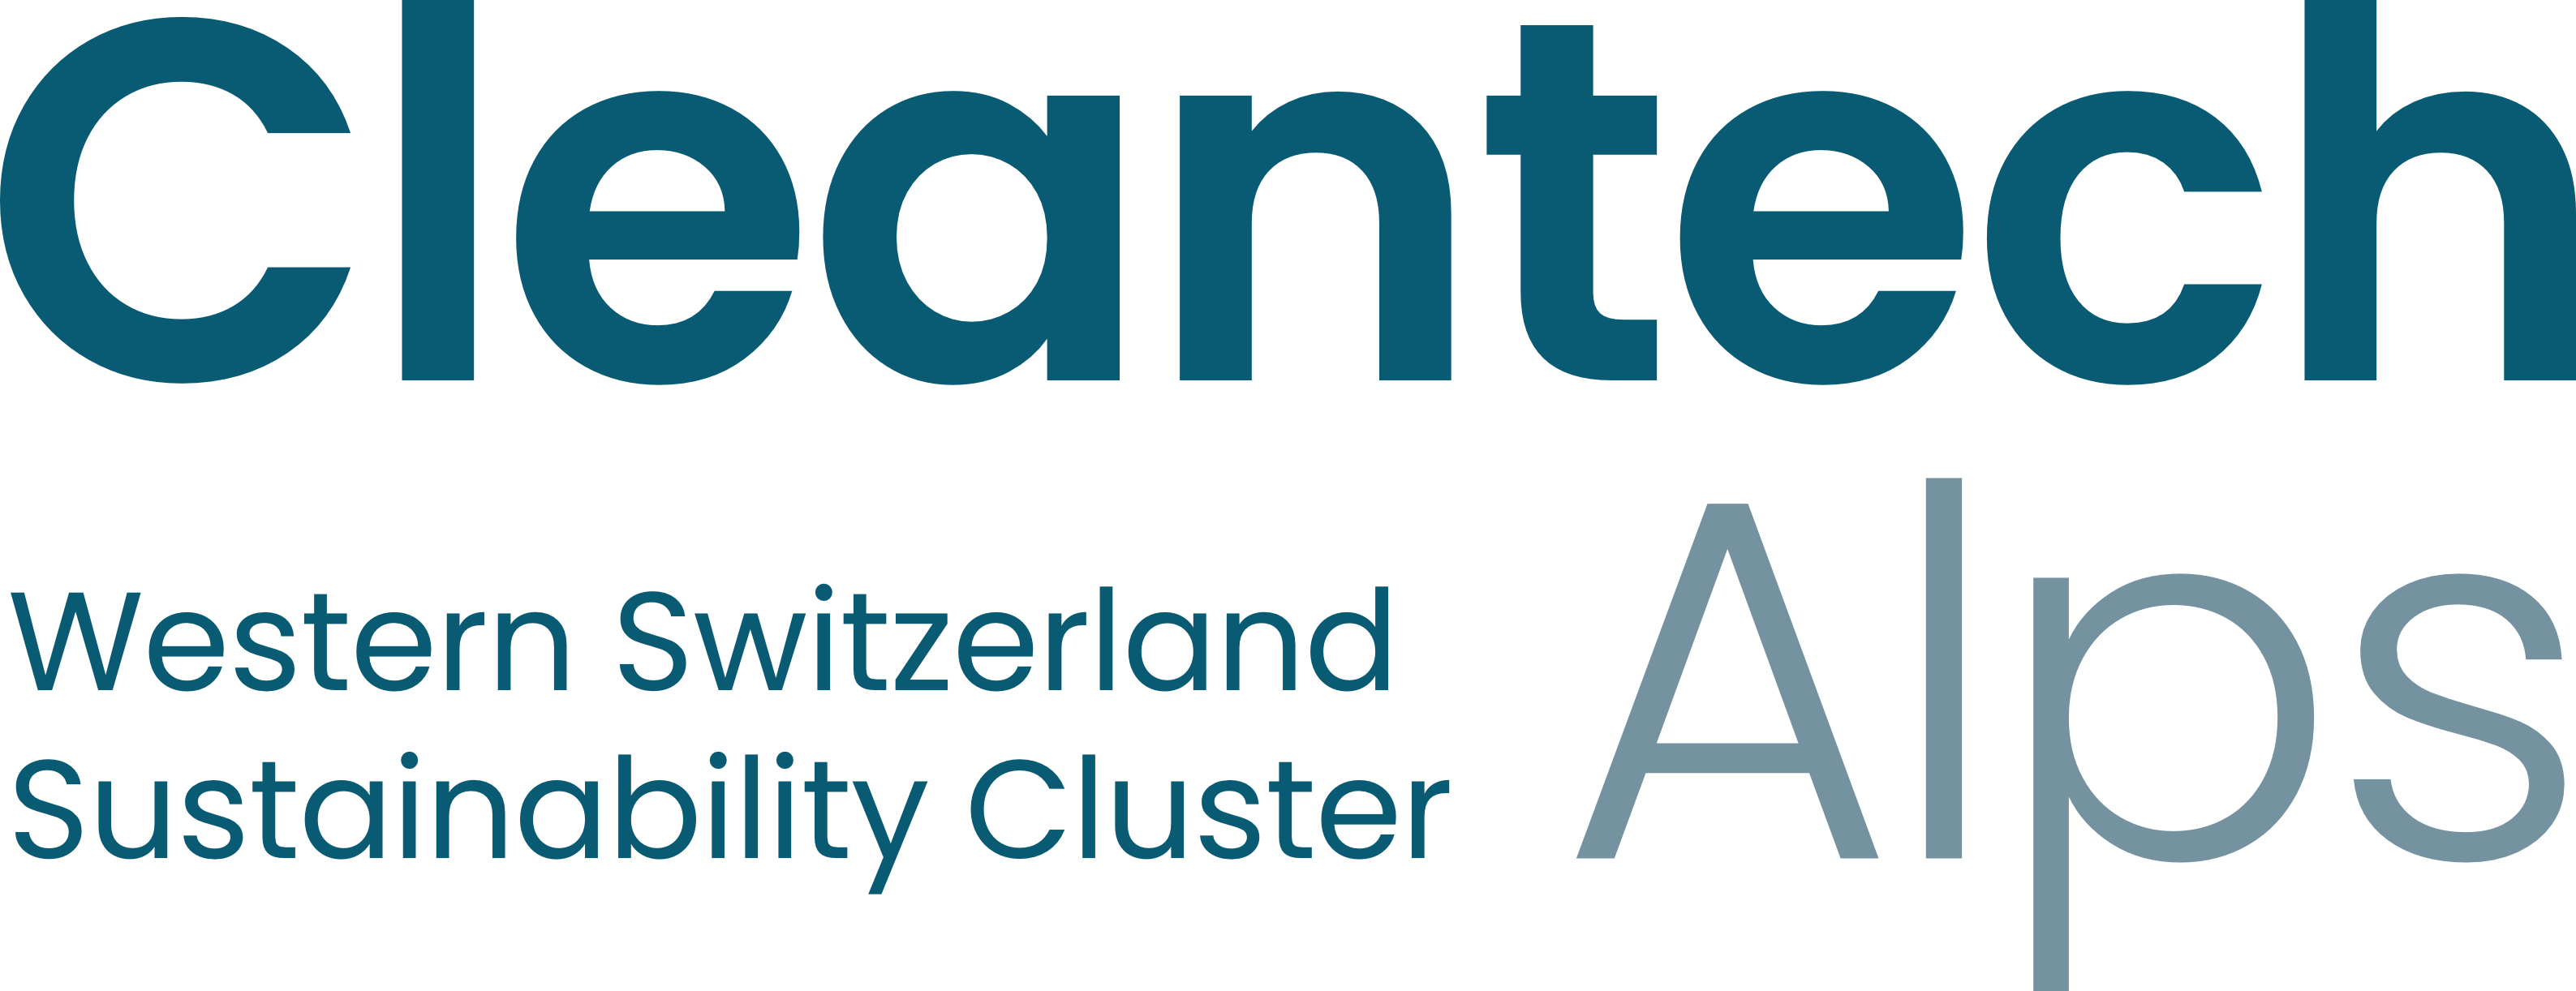 Logo CleantechAlps, la Plateforme de promotion de la durabilité et des cleantech en Suisse occidentale.